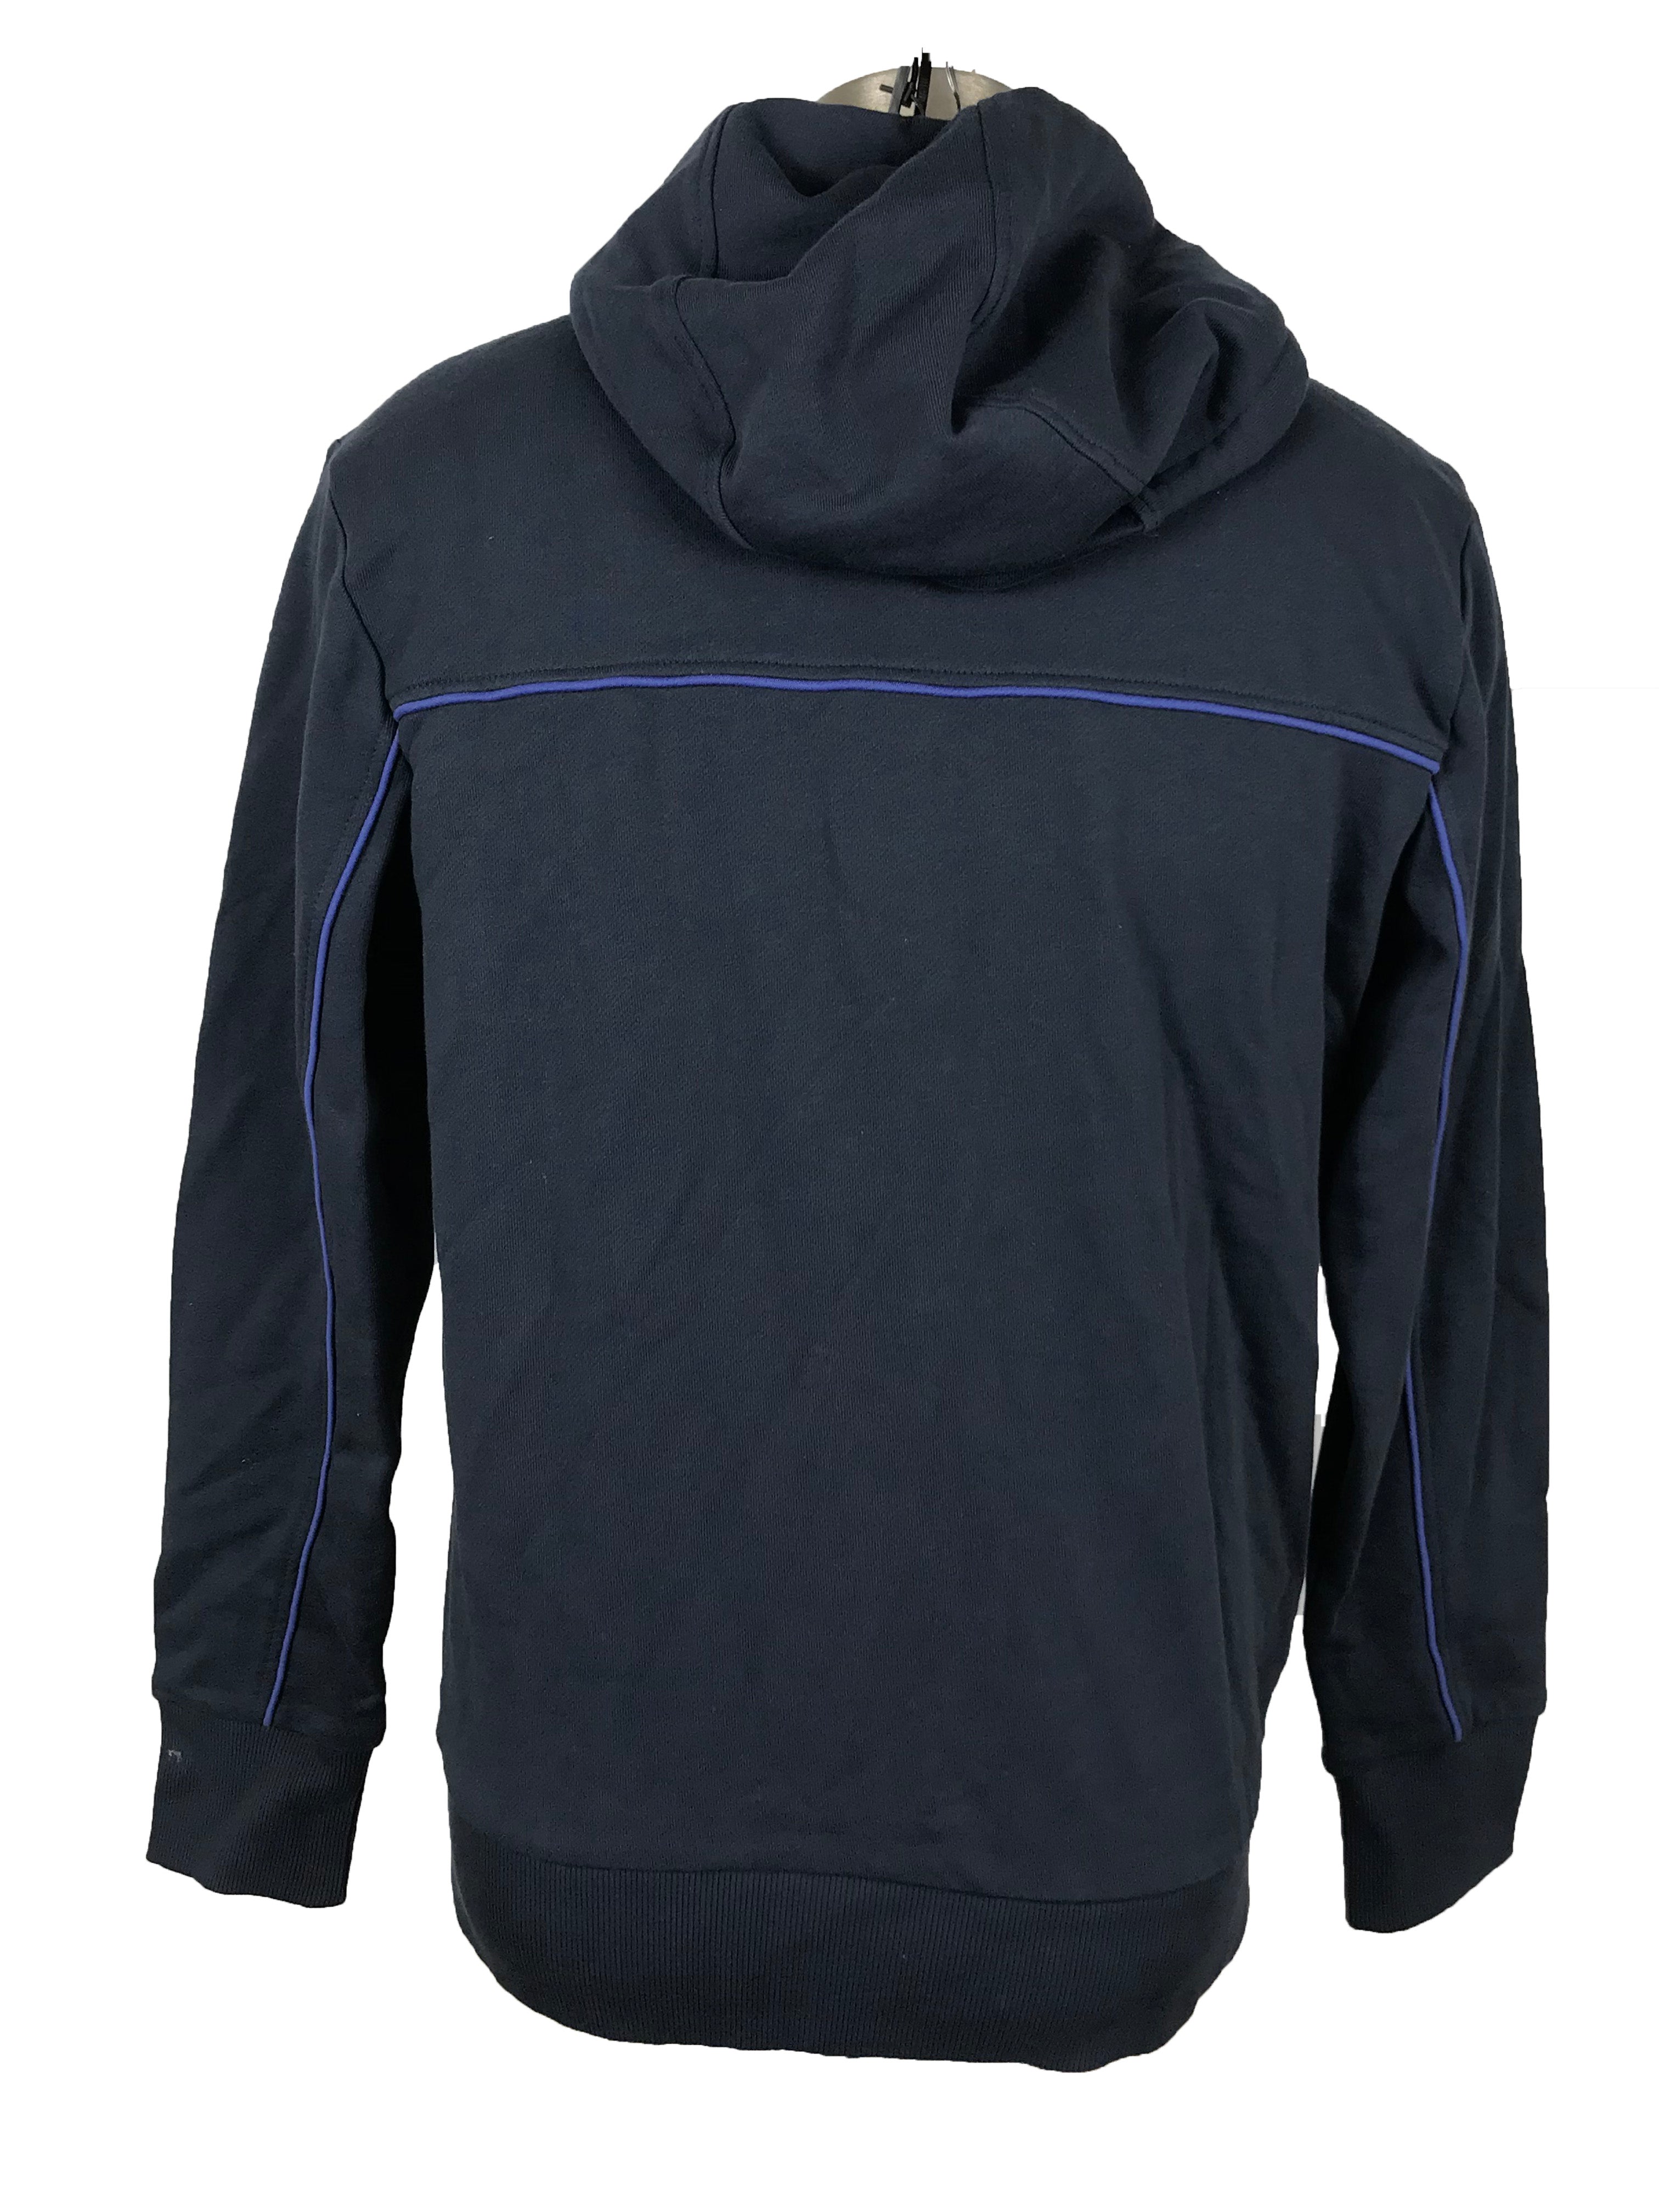 Hugo Boss Black Zip-Up Sweatshirt Men's Size Medium